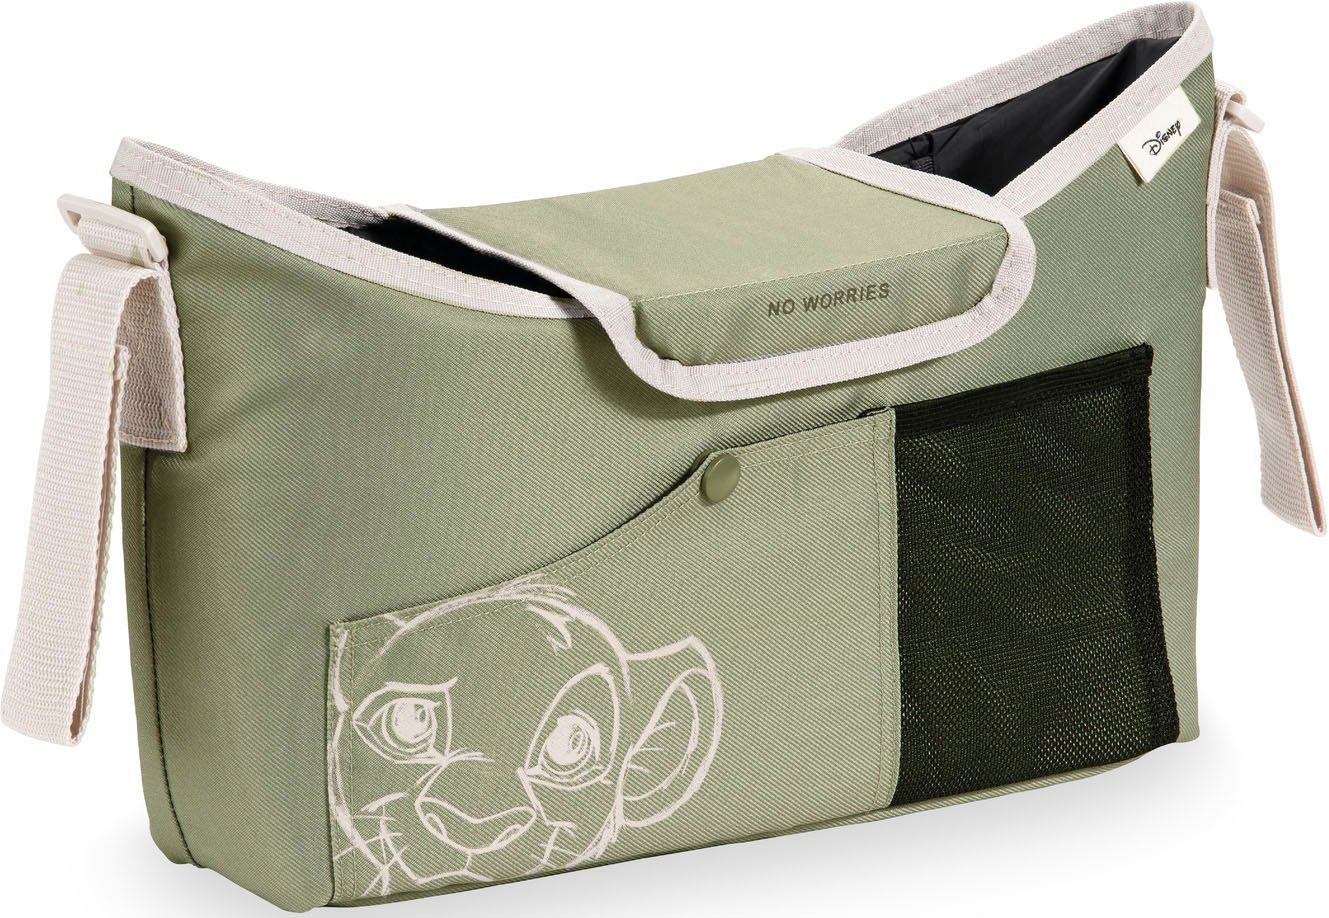 Pushchair Kinderwagen-Tasche Olive Simba Hauck Bag,